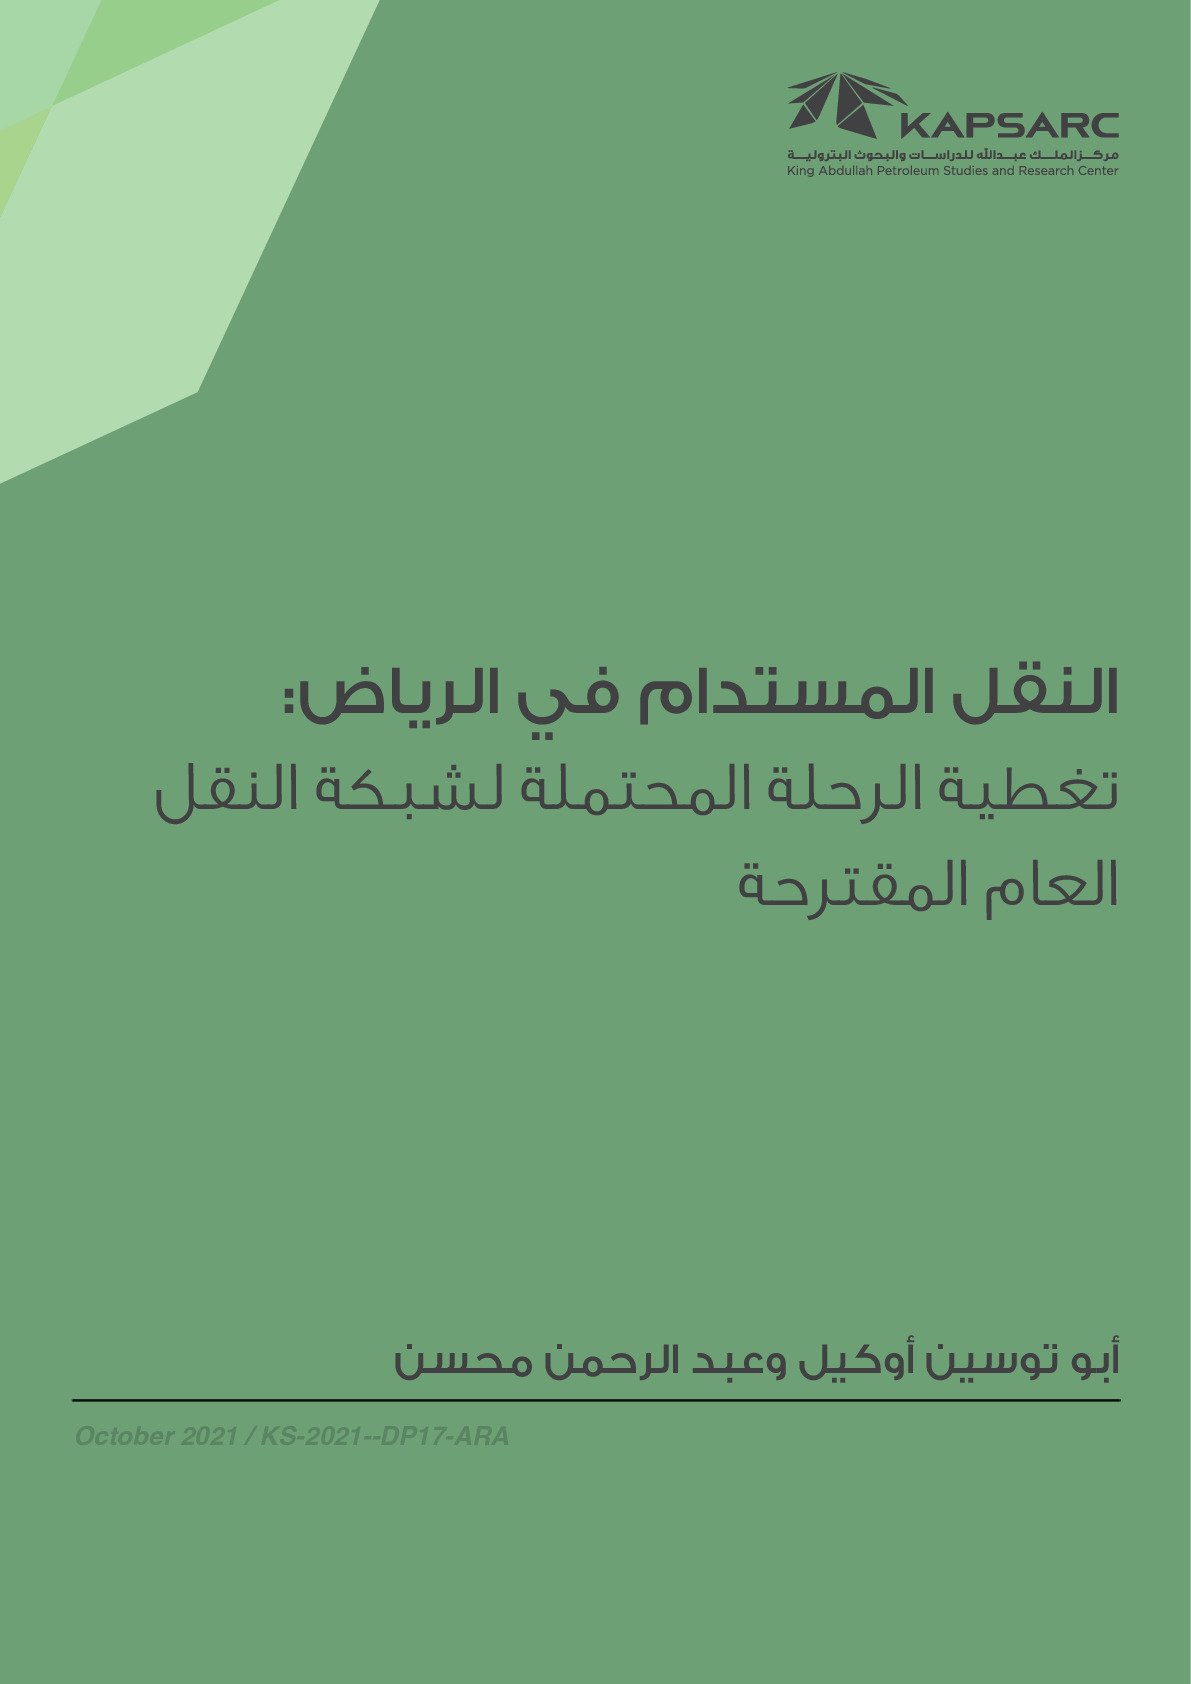 النقل المستدام في الرياض: تغطية الرحلة المحتملة لشبكة النقل العام المقترحة